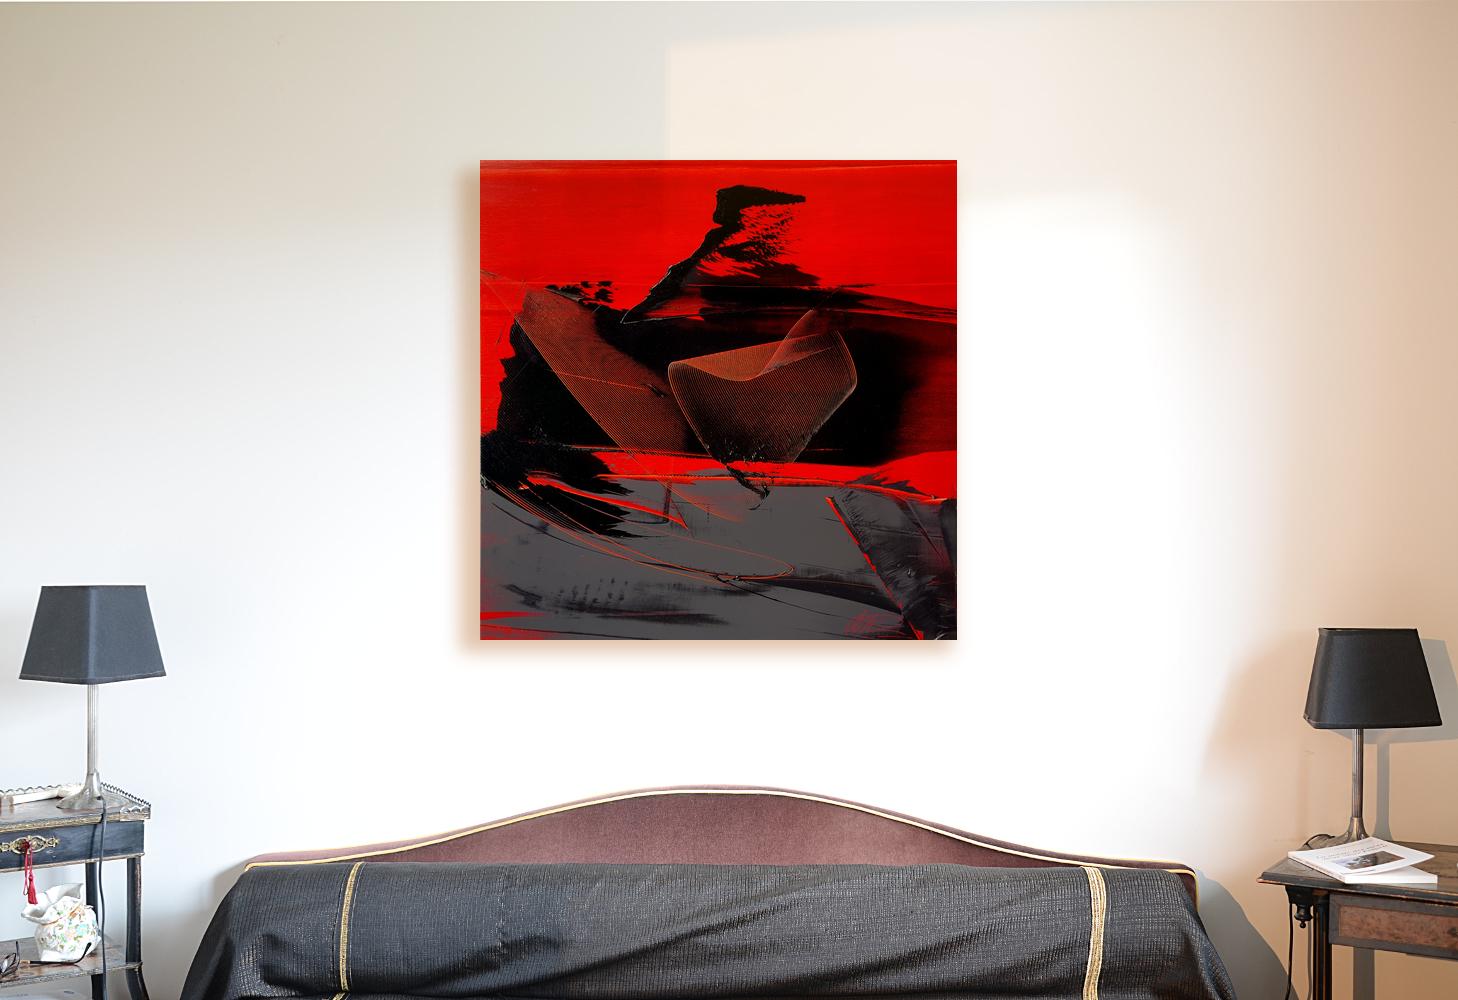 Noir et gris sur fond rouge Abstraction lyrique Peinture à l'huile, sans titre - Painting de Jean Soyer